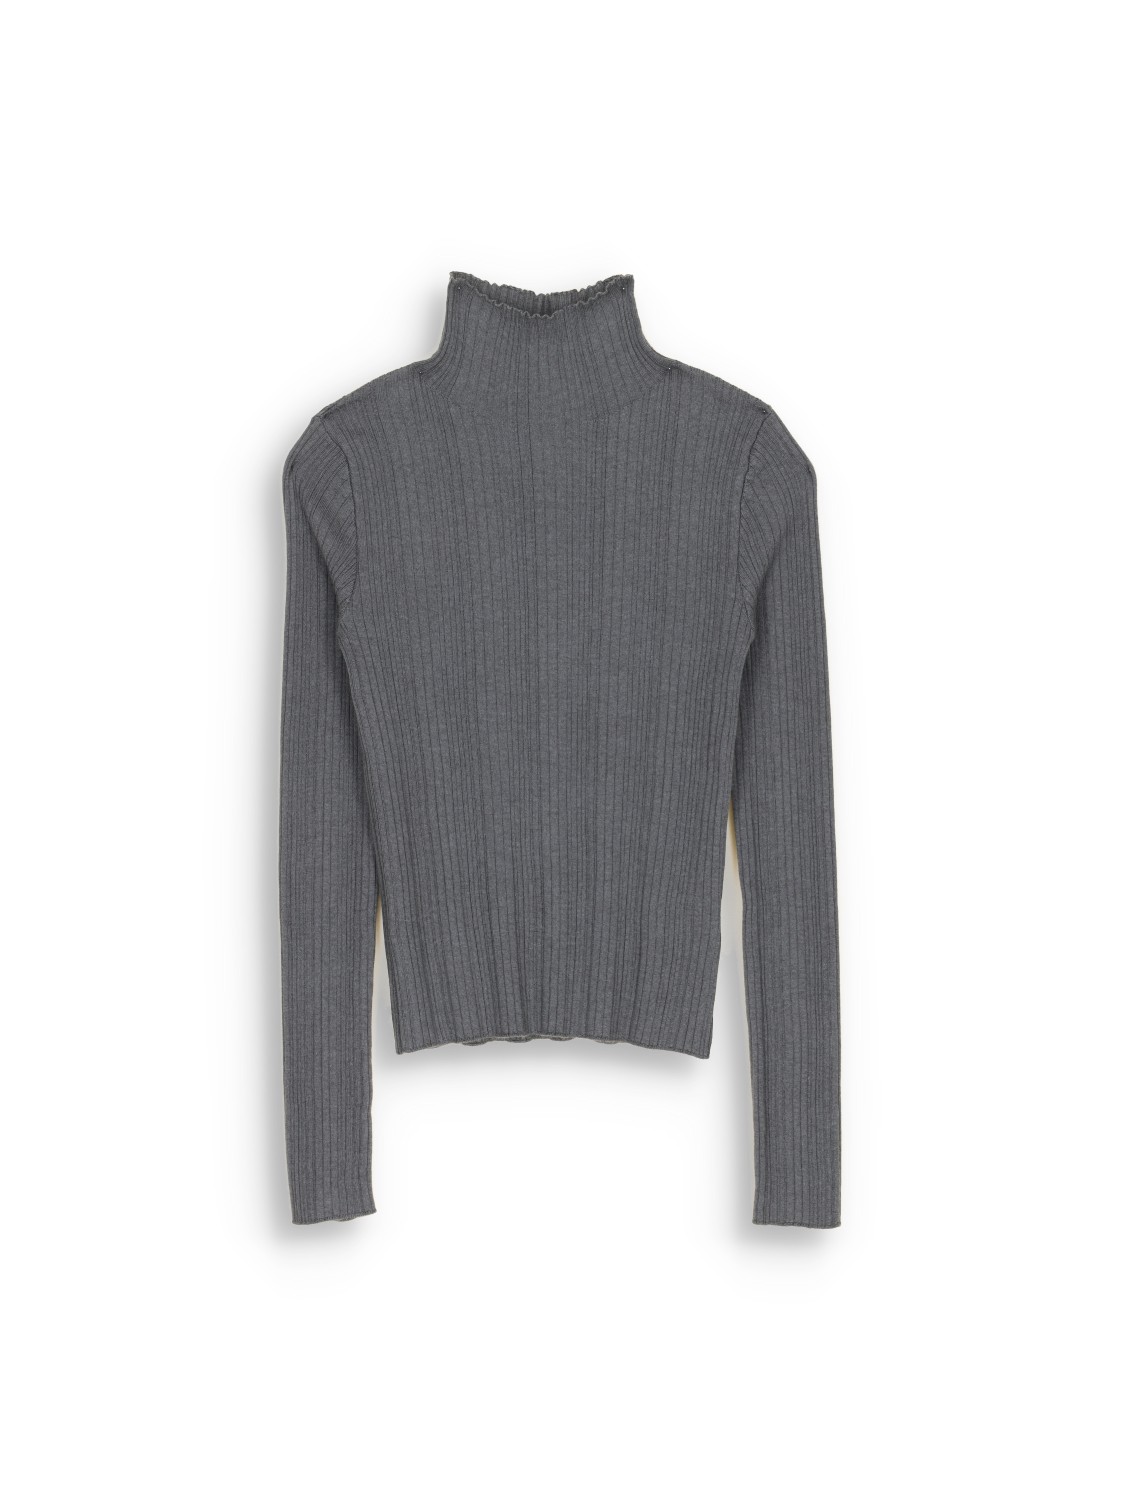 Iris von Arnim Cashmere Silk Sweater - Ripp-Pullover aus Kaschmir und Seide   grau M